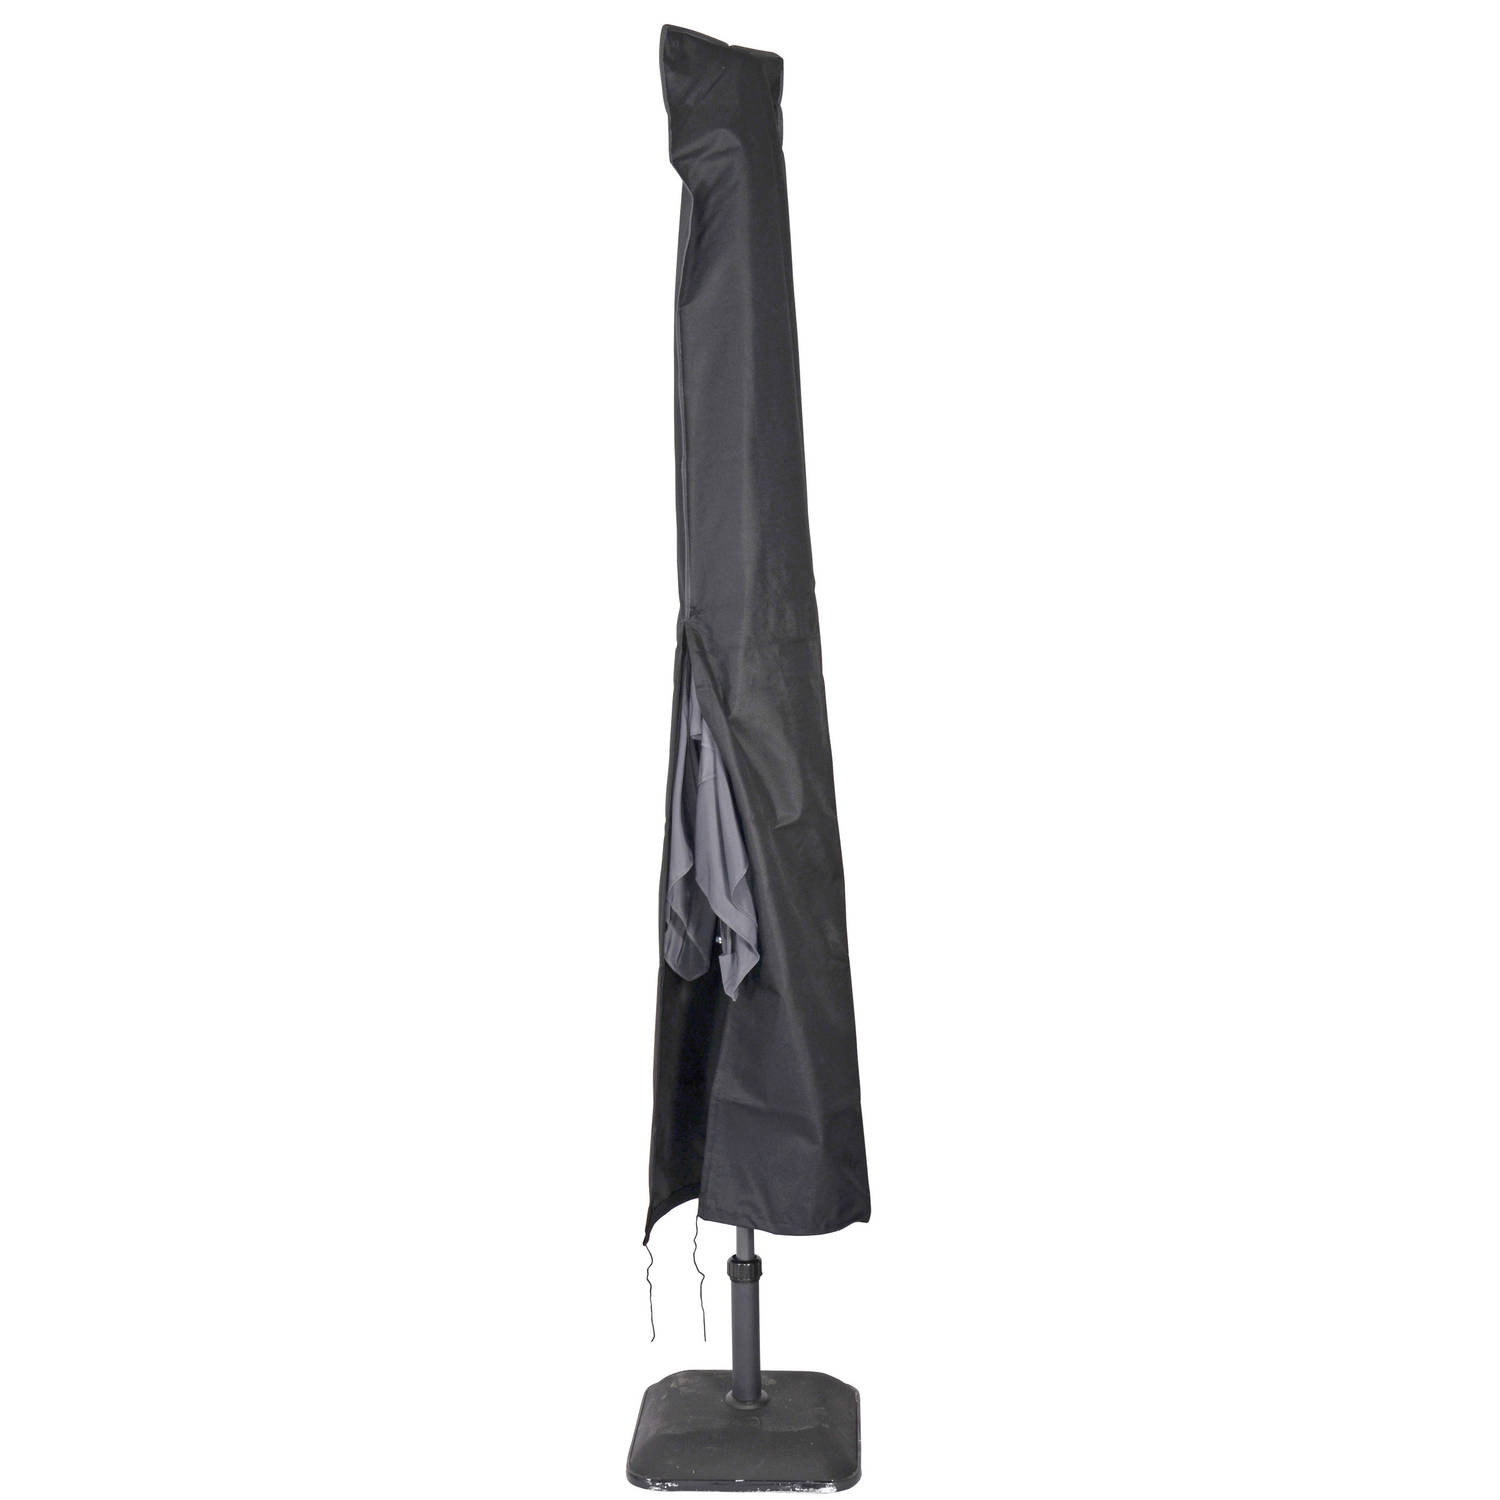 Afdekhoes / beschermhoes zwart voor parasols met een diameter van 4 m inclusief stok - Parasolhoezen